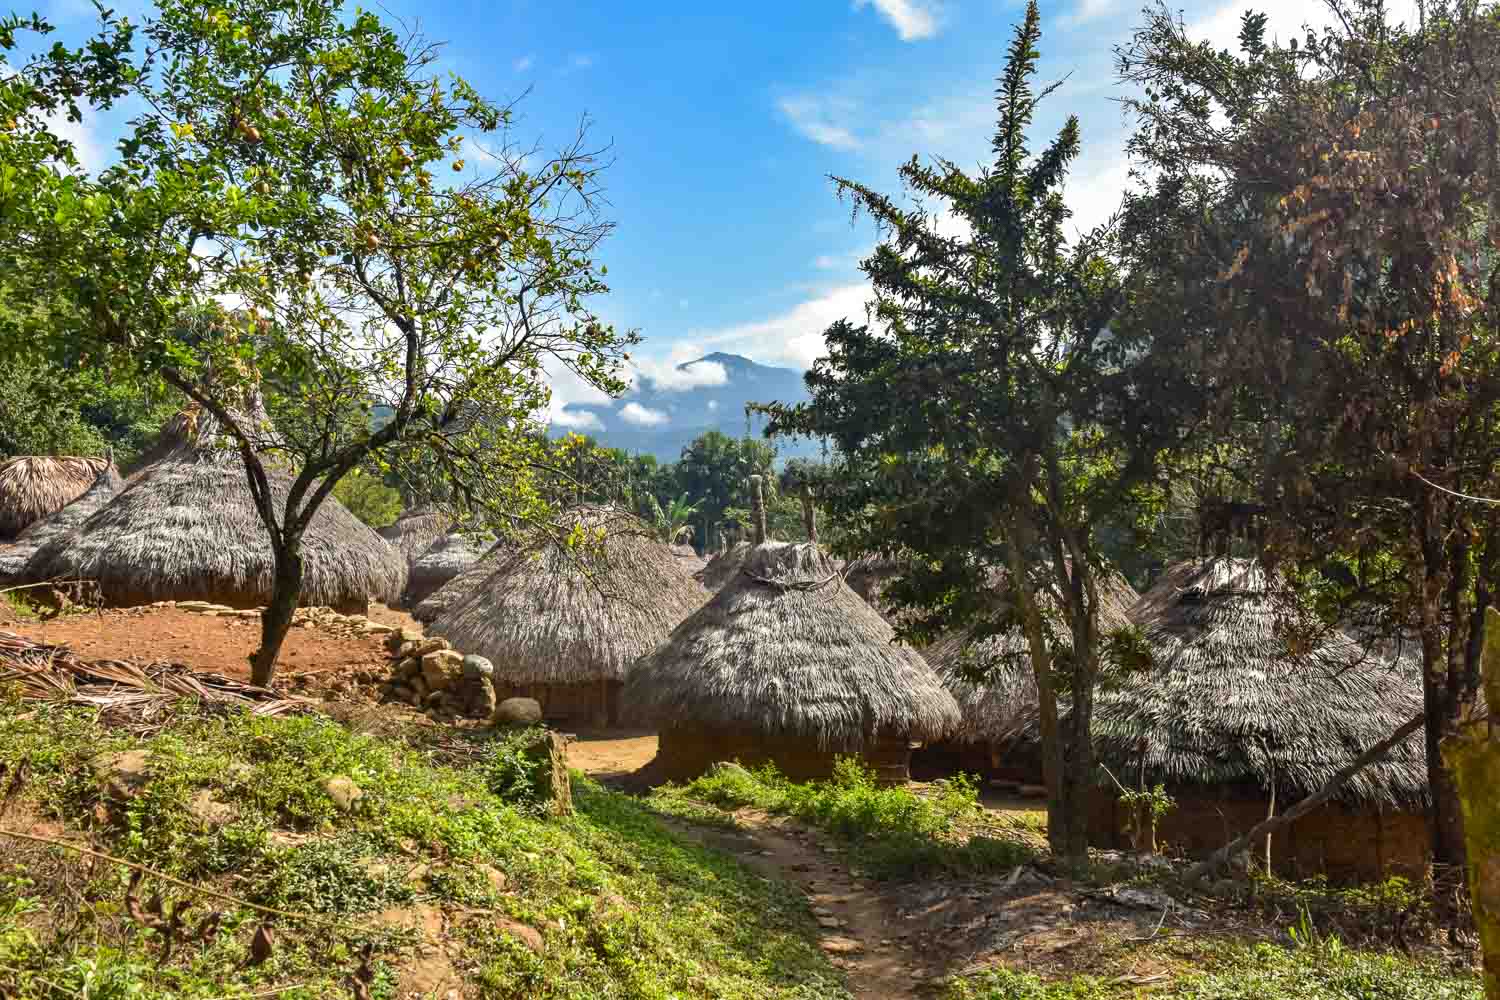 Maisons typiques d’un village Kogi en Colombie